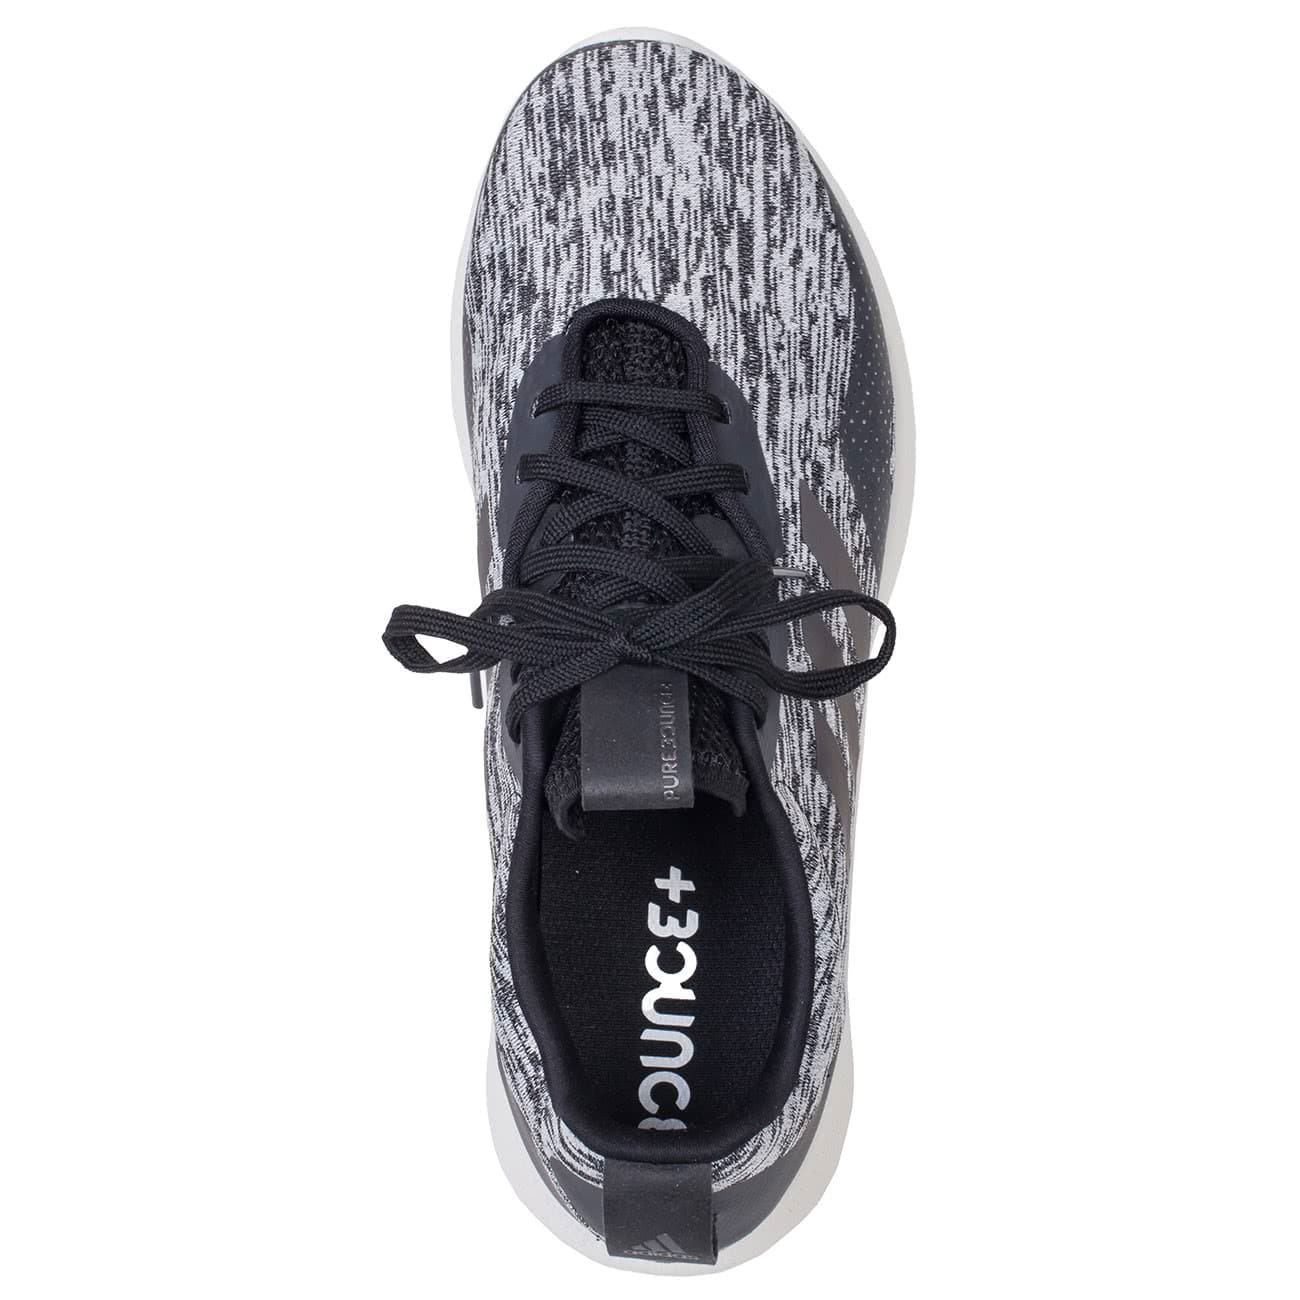 Мужские беговые кроссовки Adidas Purebounce+ серого цвета купить в интернет магазине Kwinto